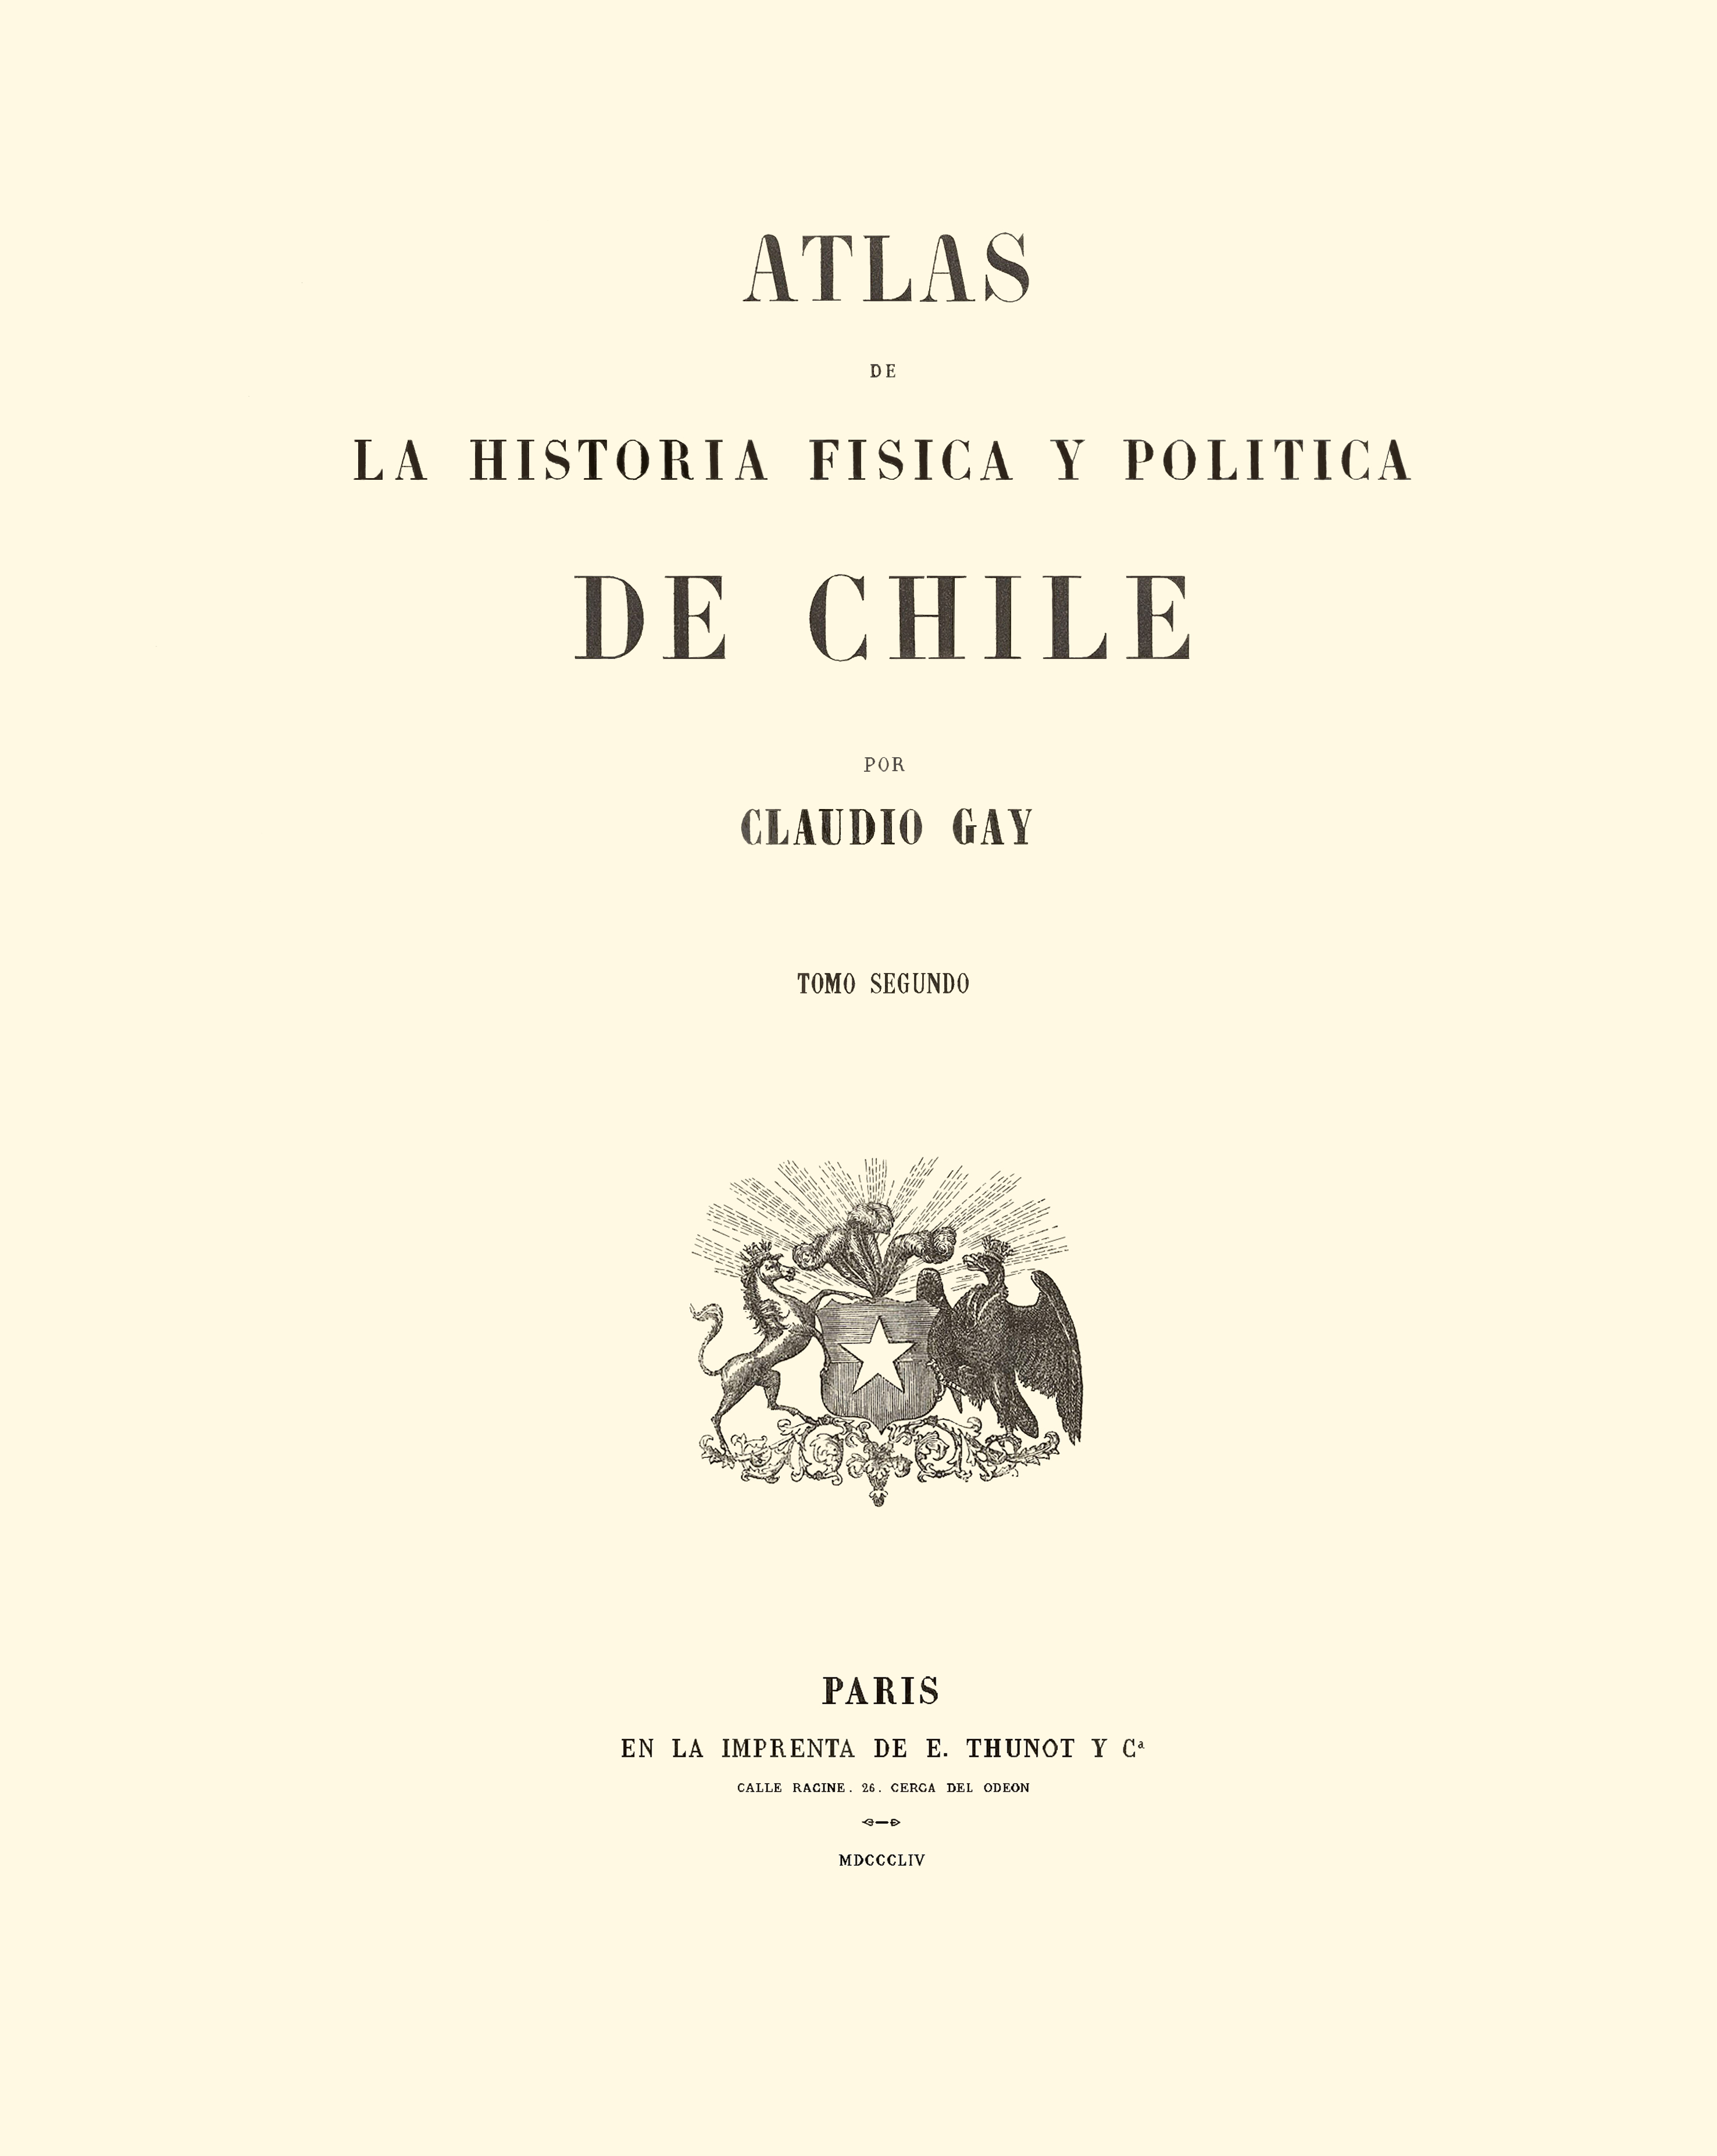 Atlas de la historia física y política de Chile: tomo 2